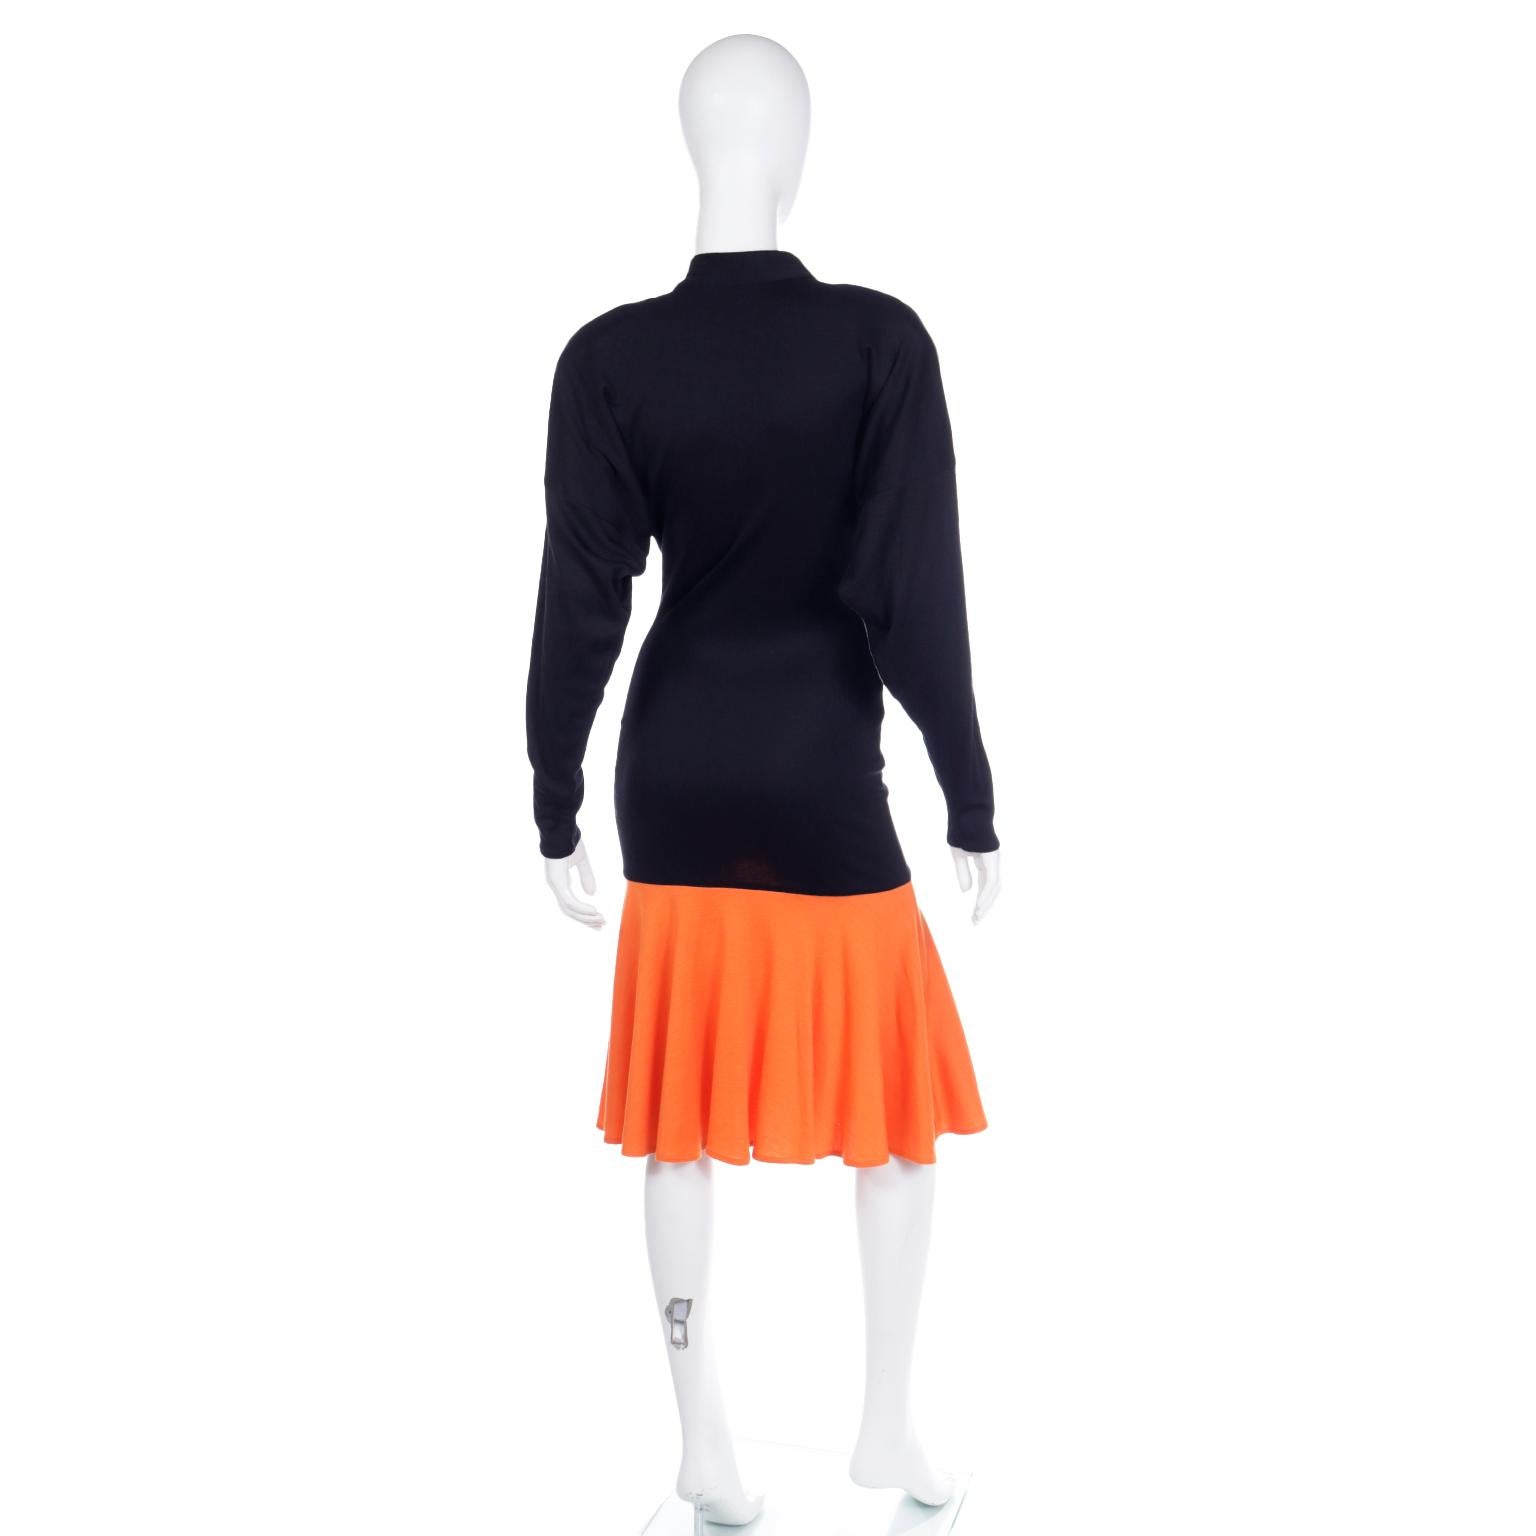 Rare Patrick Kelly Paris F/W 1988 Black & Orange Color Block Vintage Dress For Sale 1